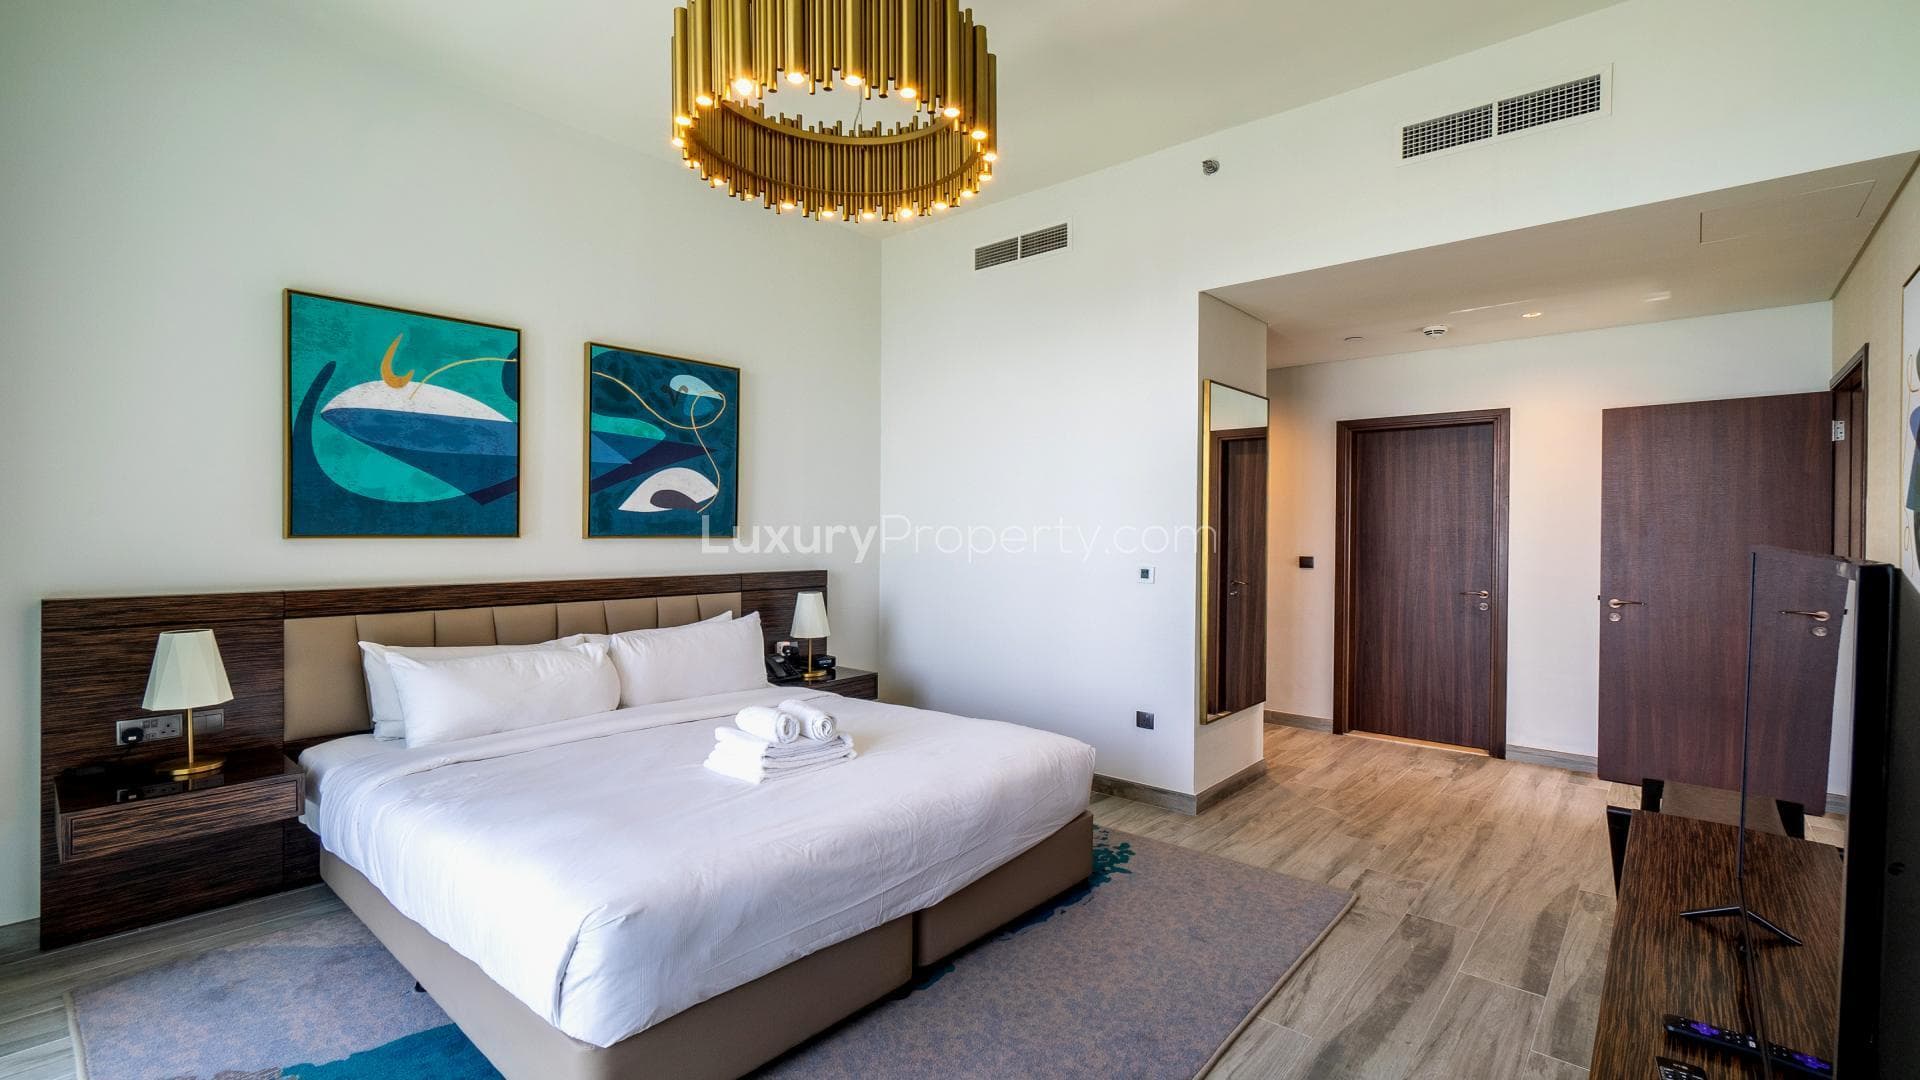 2 Bedroom Apartment For Rent Avani Palm View Hotel Suites Lp36171 234c8d5f75928e00.jpg